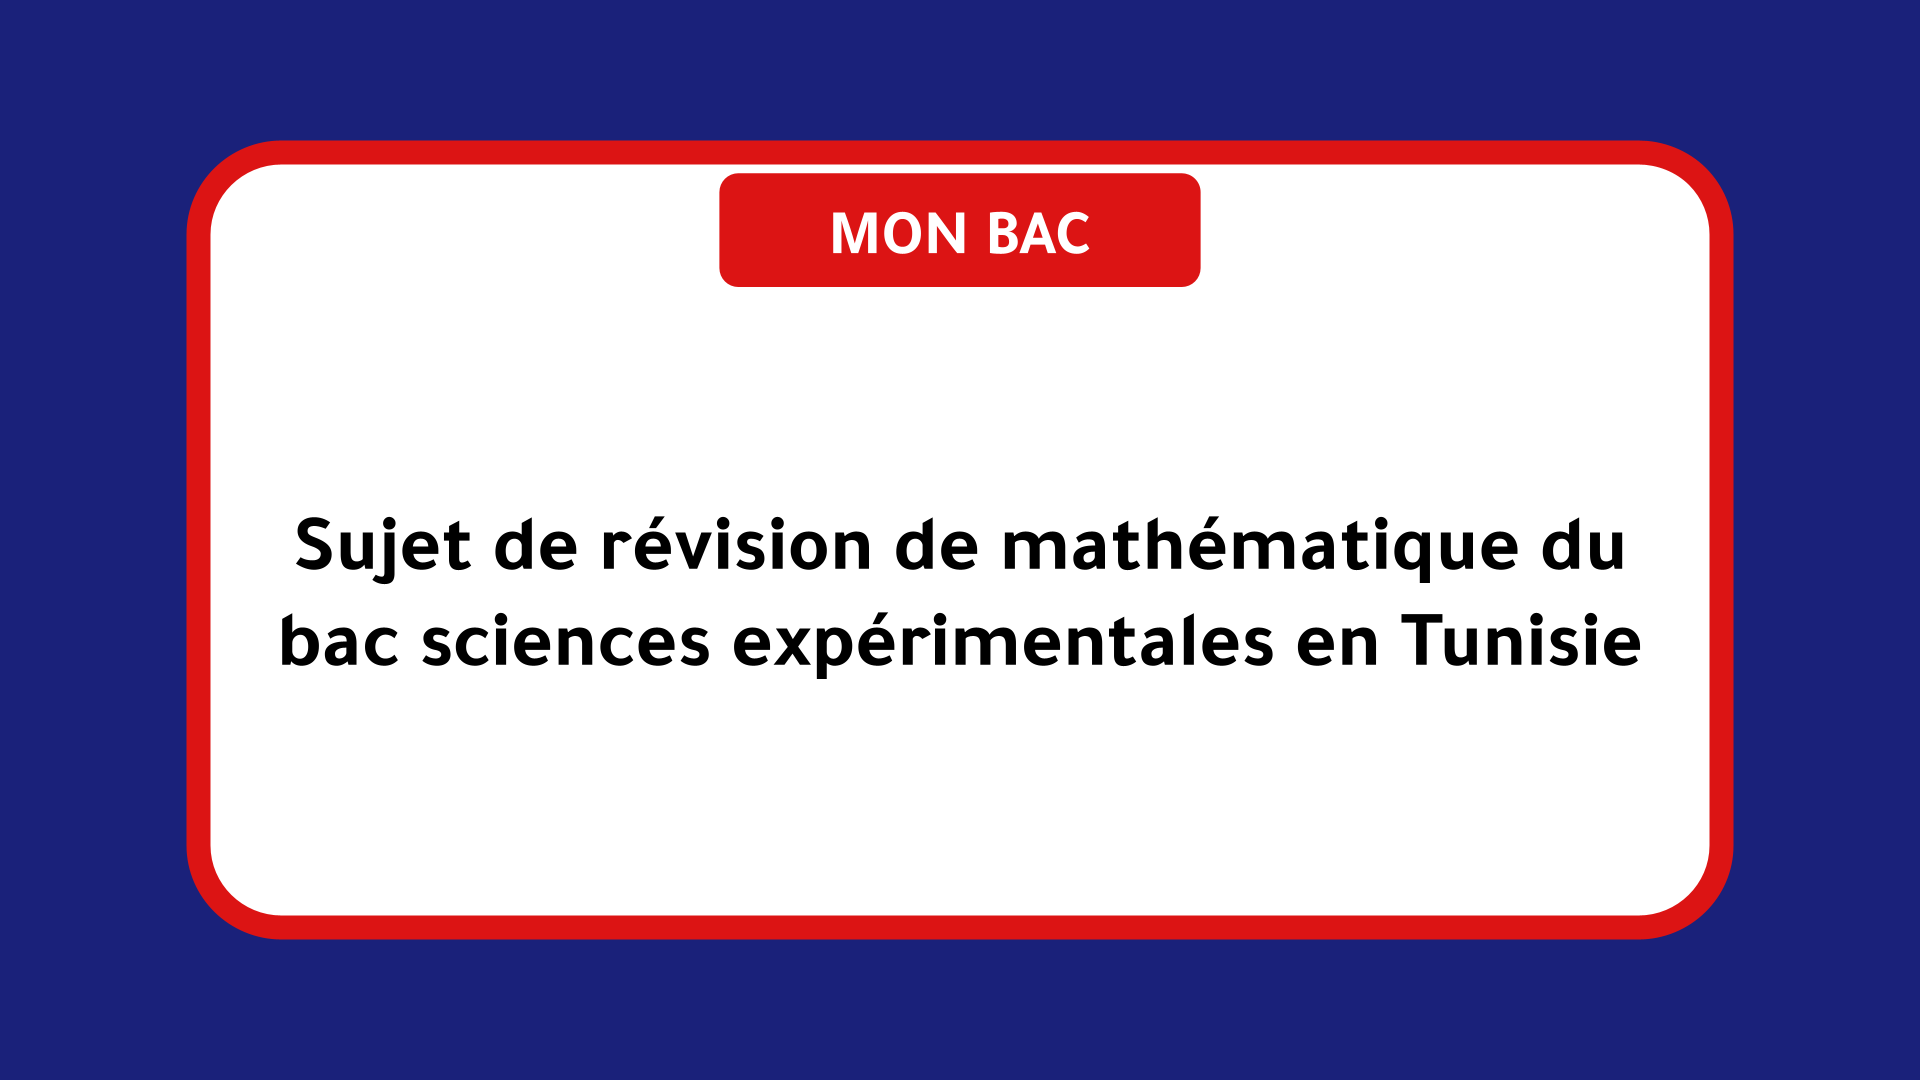 Sujet de révision de mathématique du bac sciences en Tunisie